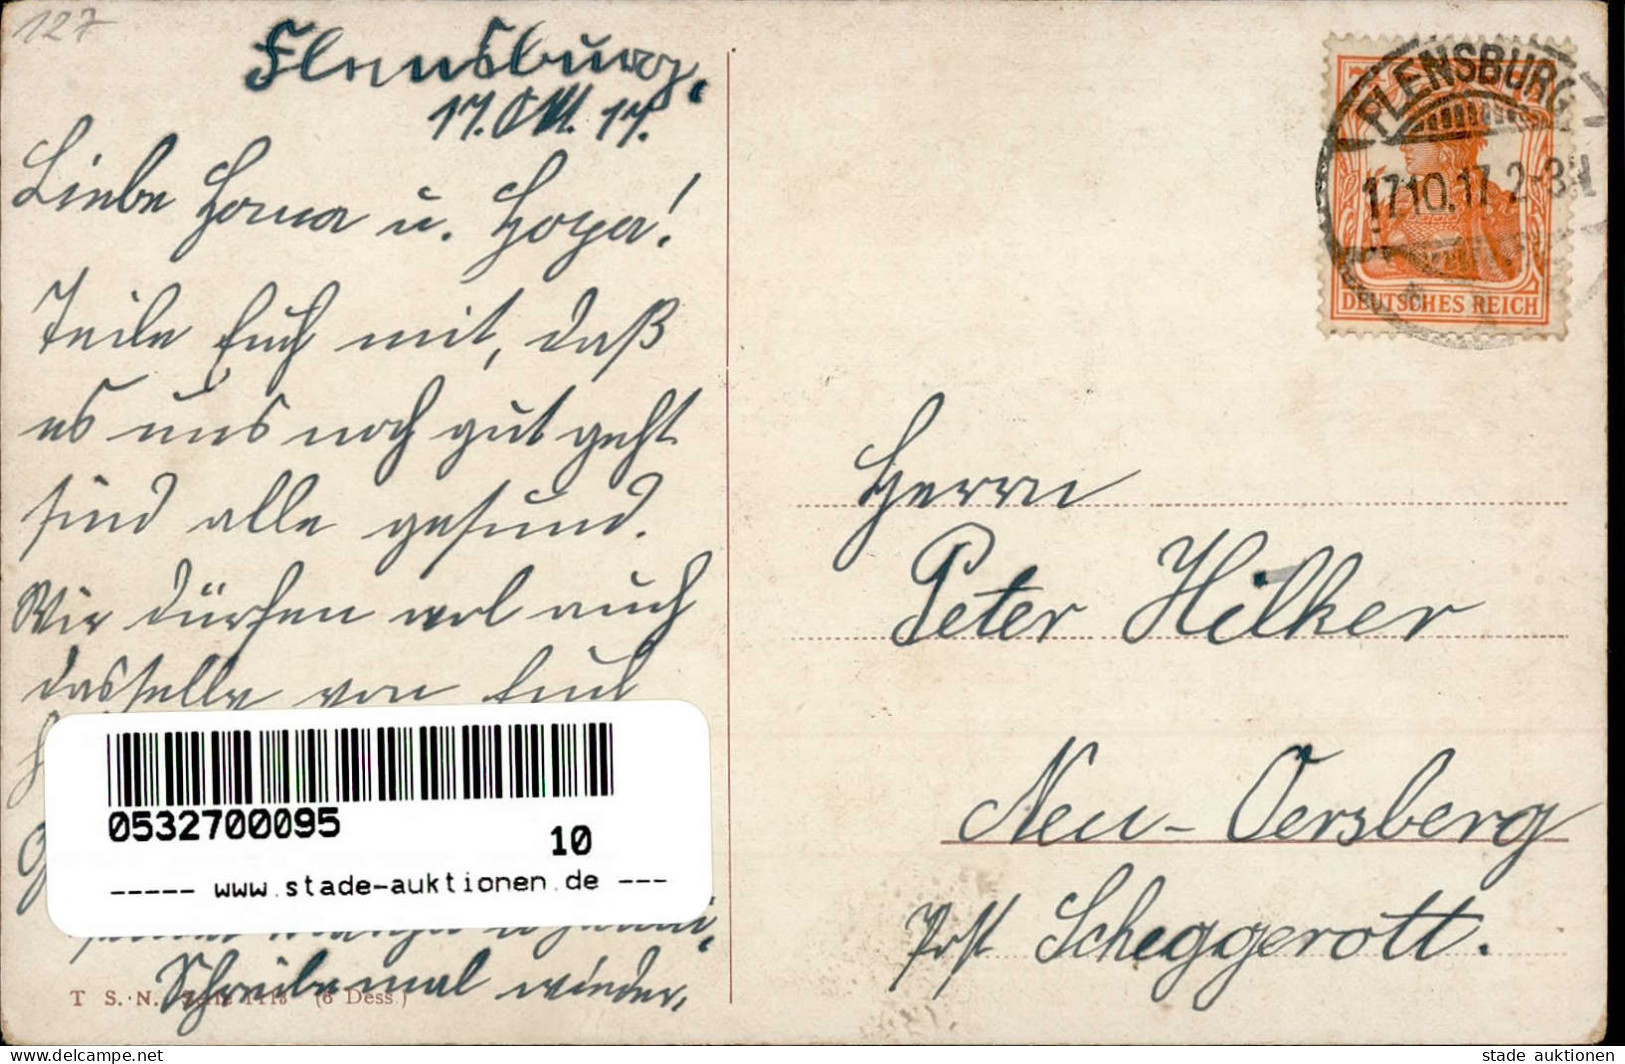 Thiele, Arthur Hochland Katze Vermenschlicht Hutmode Tracht 1917 I-II (Ecken Abgestossen) Chat - Thiele, Arthur